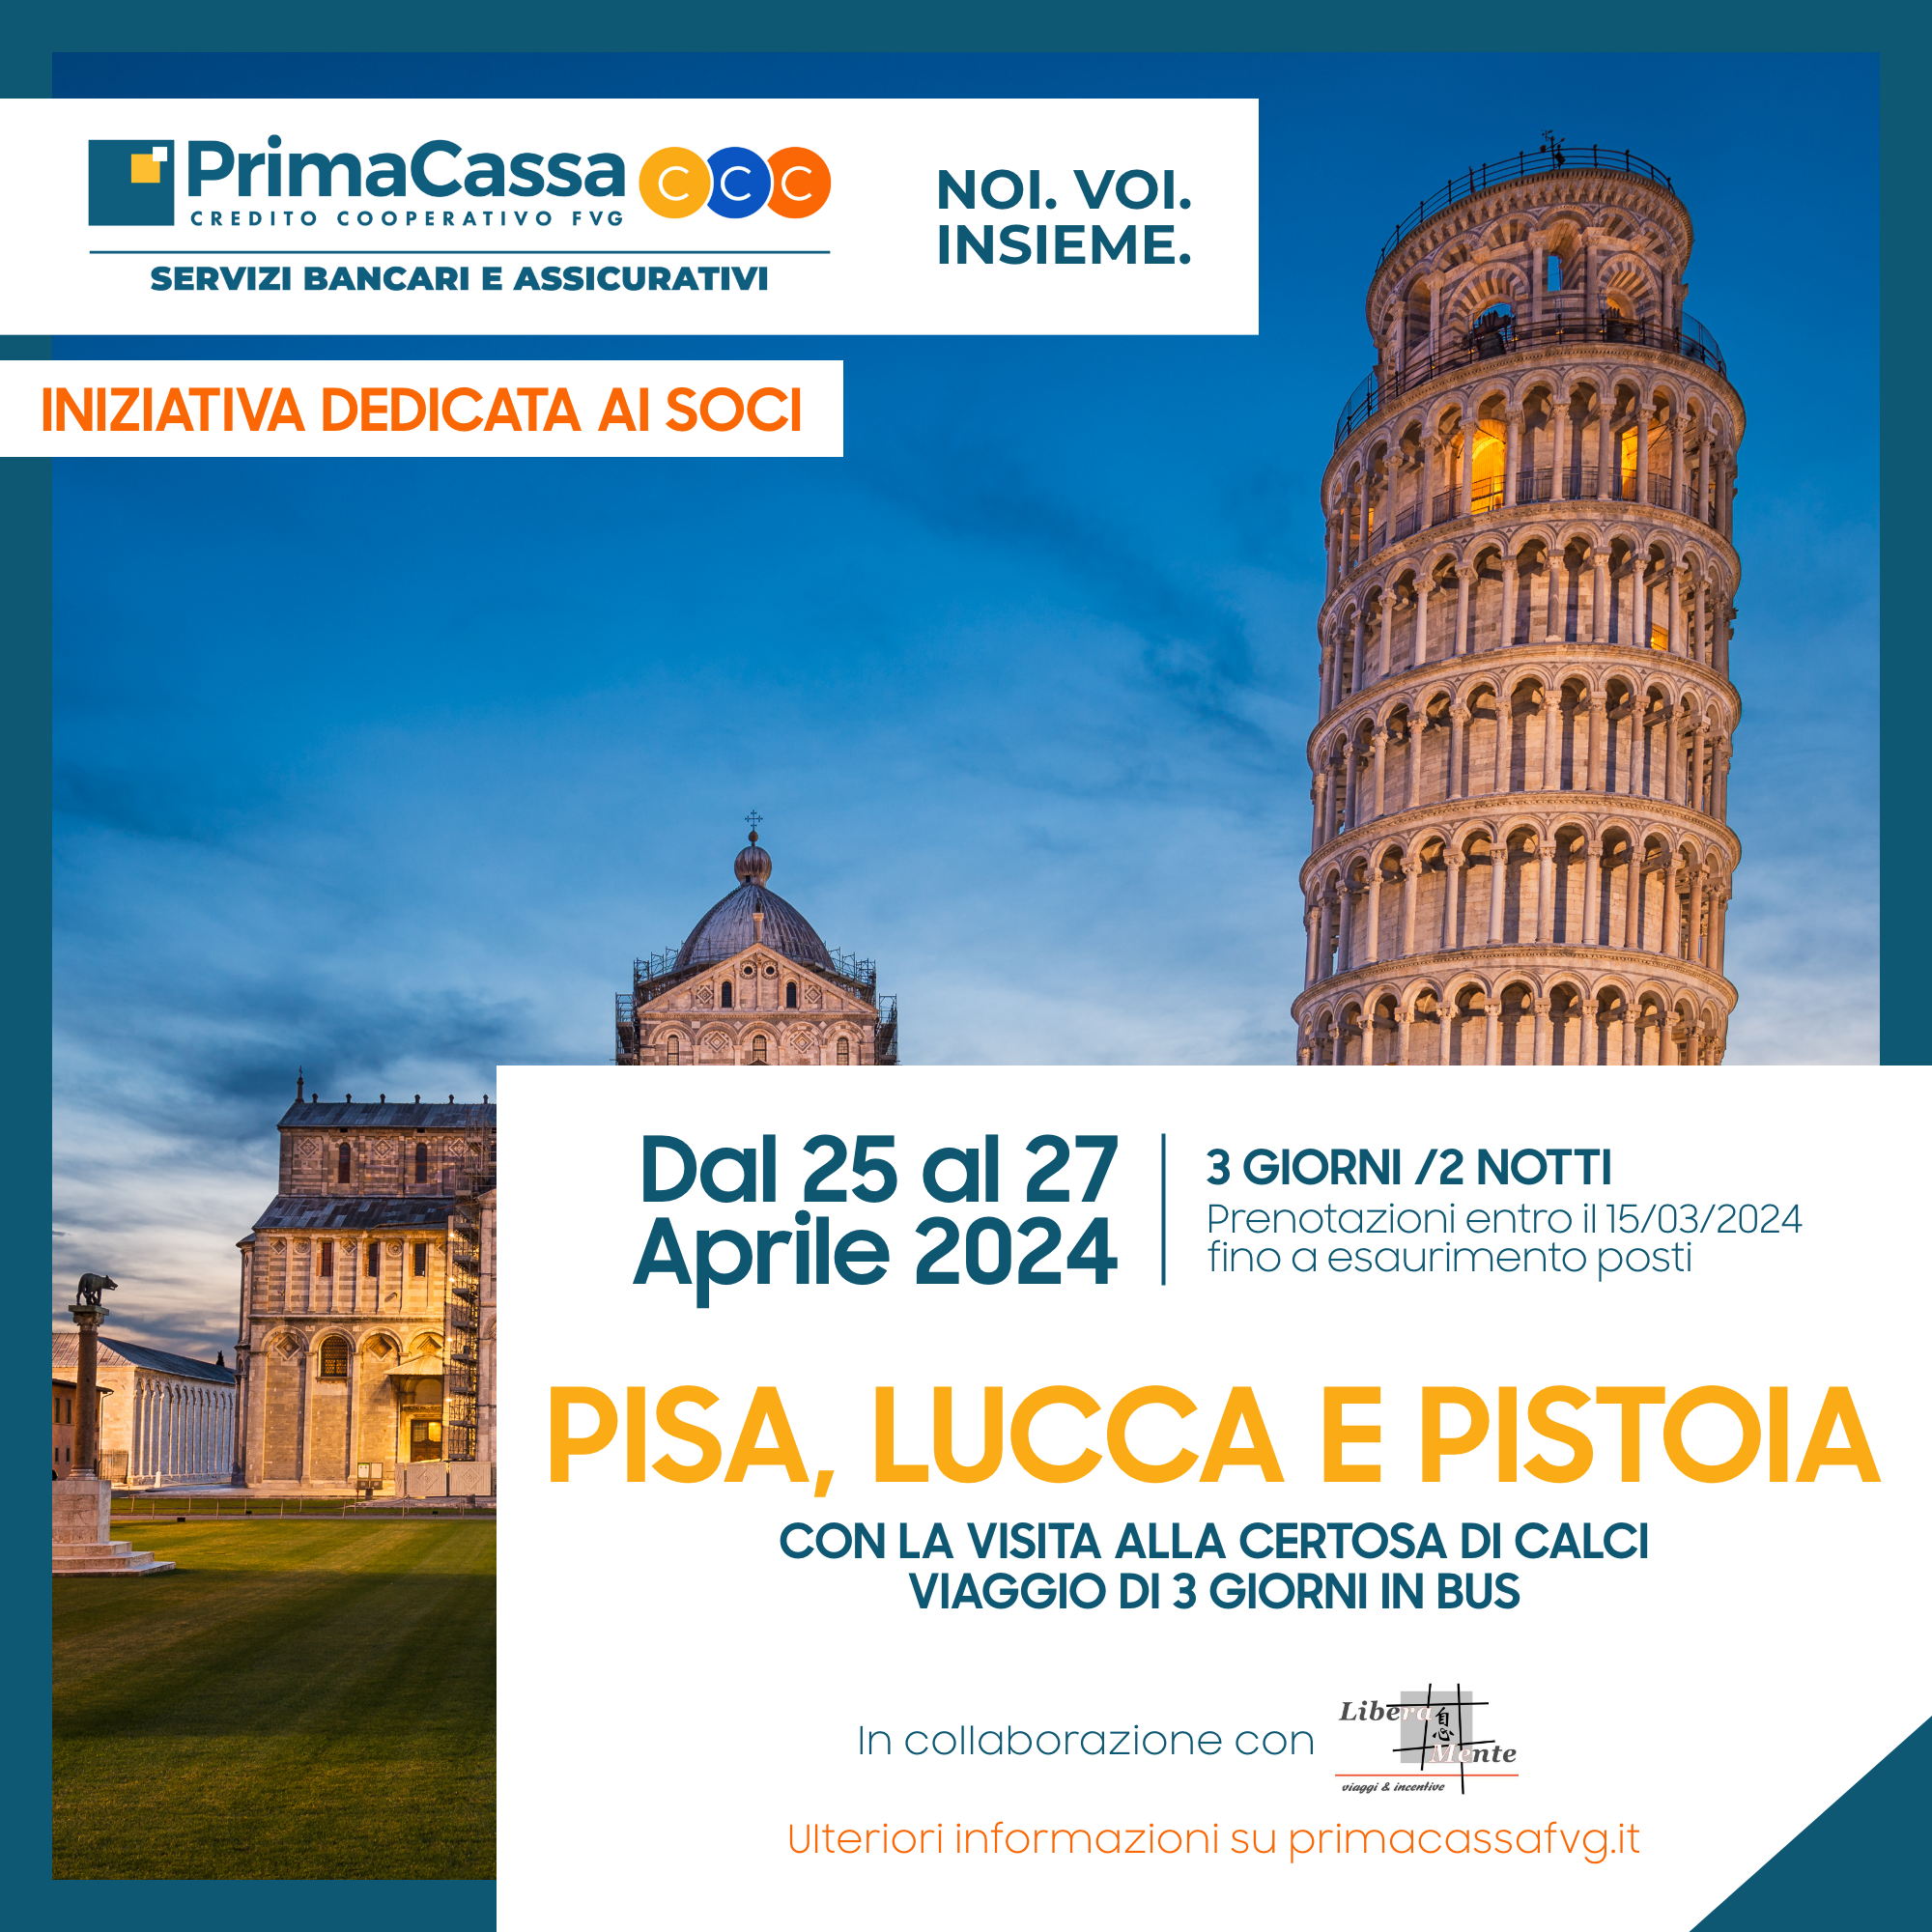 Gite Sociali - Pisa, Lucca e Pistoia con la Certosa di Calci  